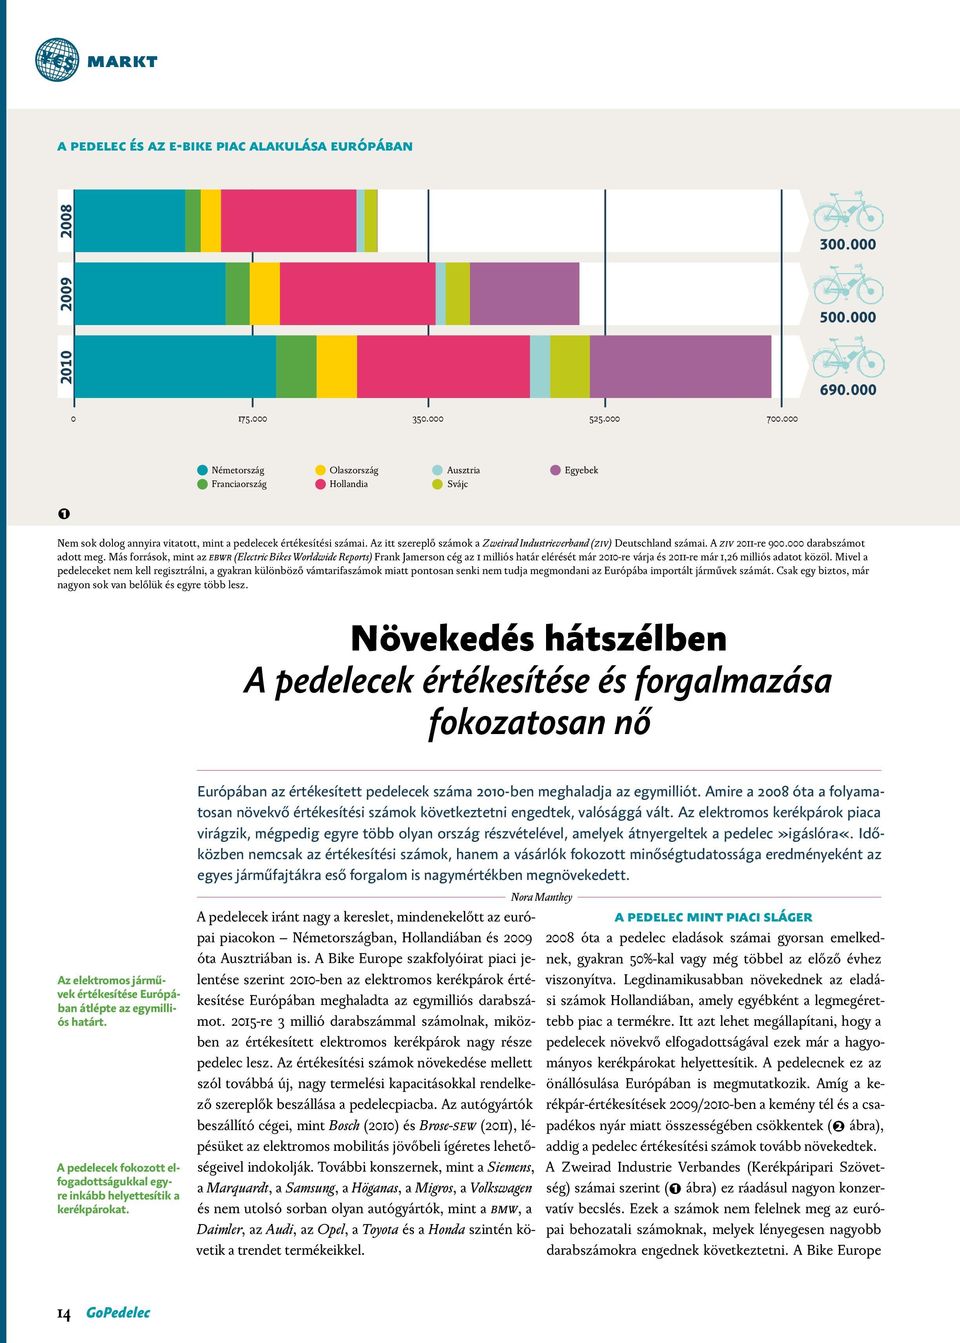 Az itt szereplő számok a Zweirad Industrieverband (ZIV) Deutschland számai. A ZIV 2011-re 900.000 darabszámot adott meg.